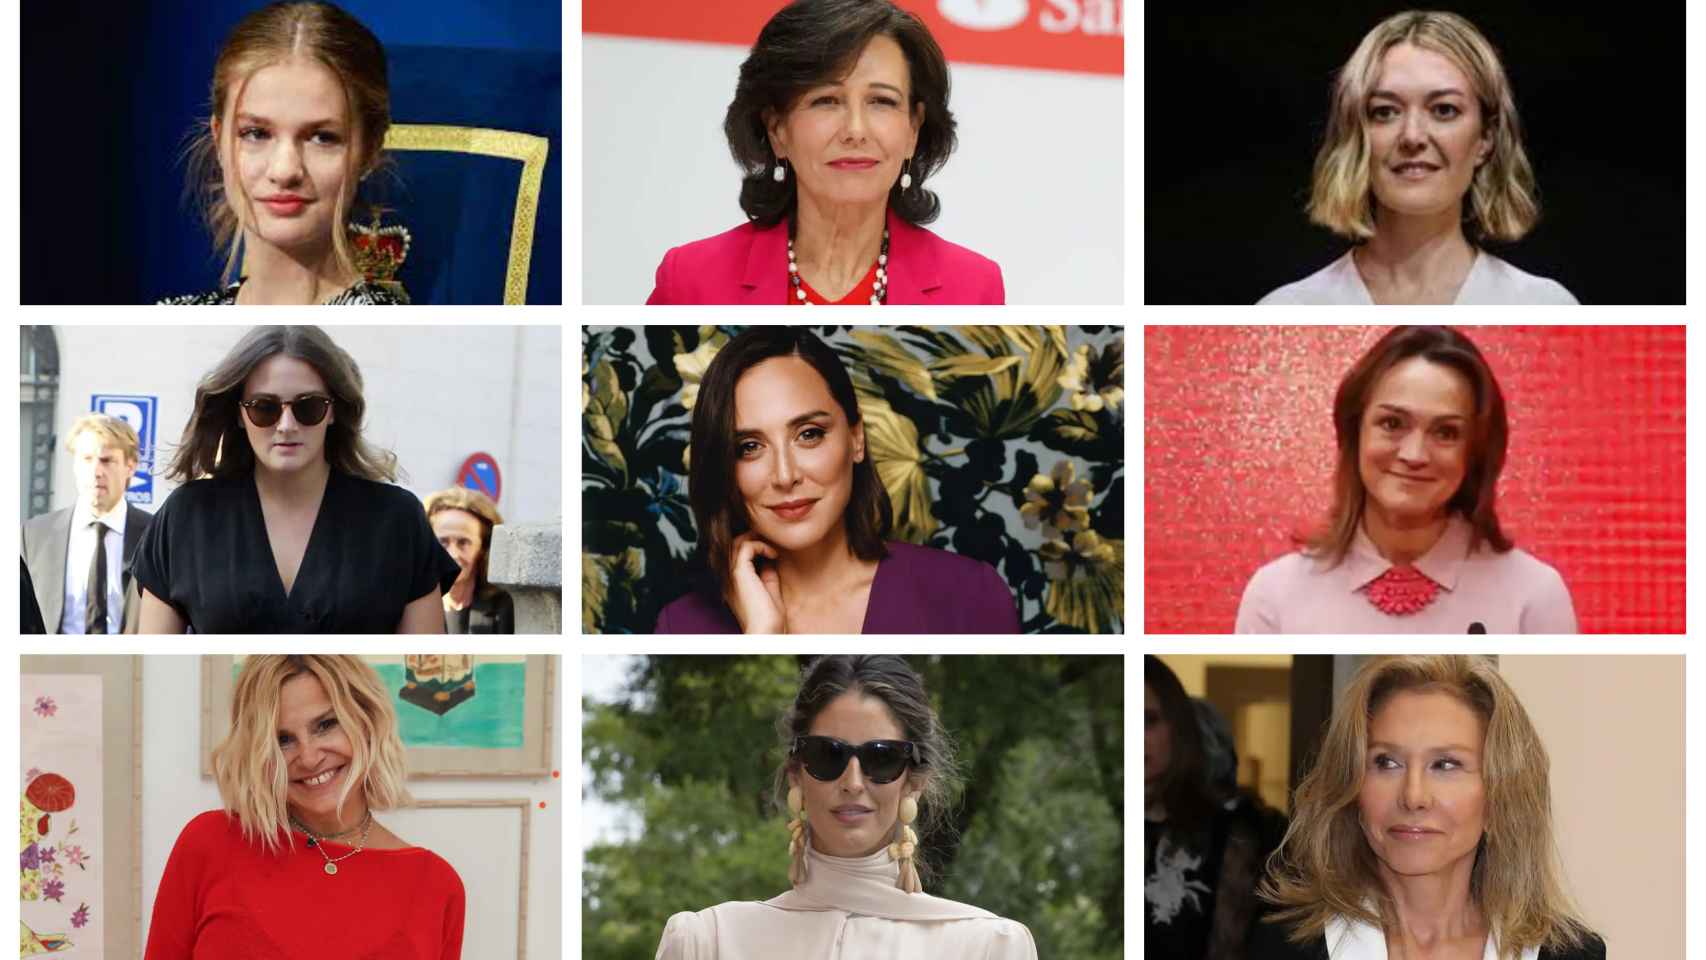 Las mujeres con algunos de los apellidos más influyentes de España